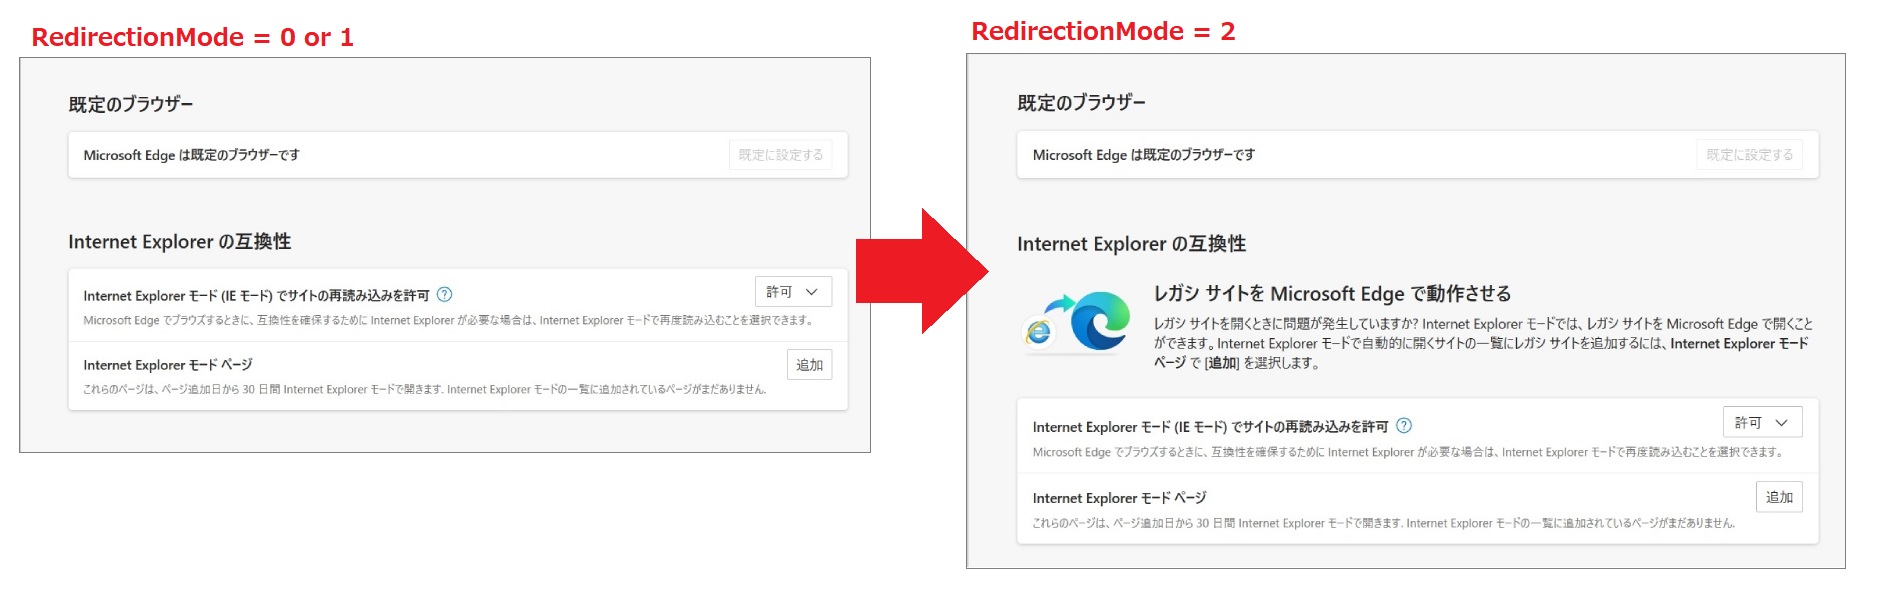 レジストリ「RedirectionMode」書き換え時の表示の変化